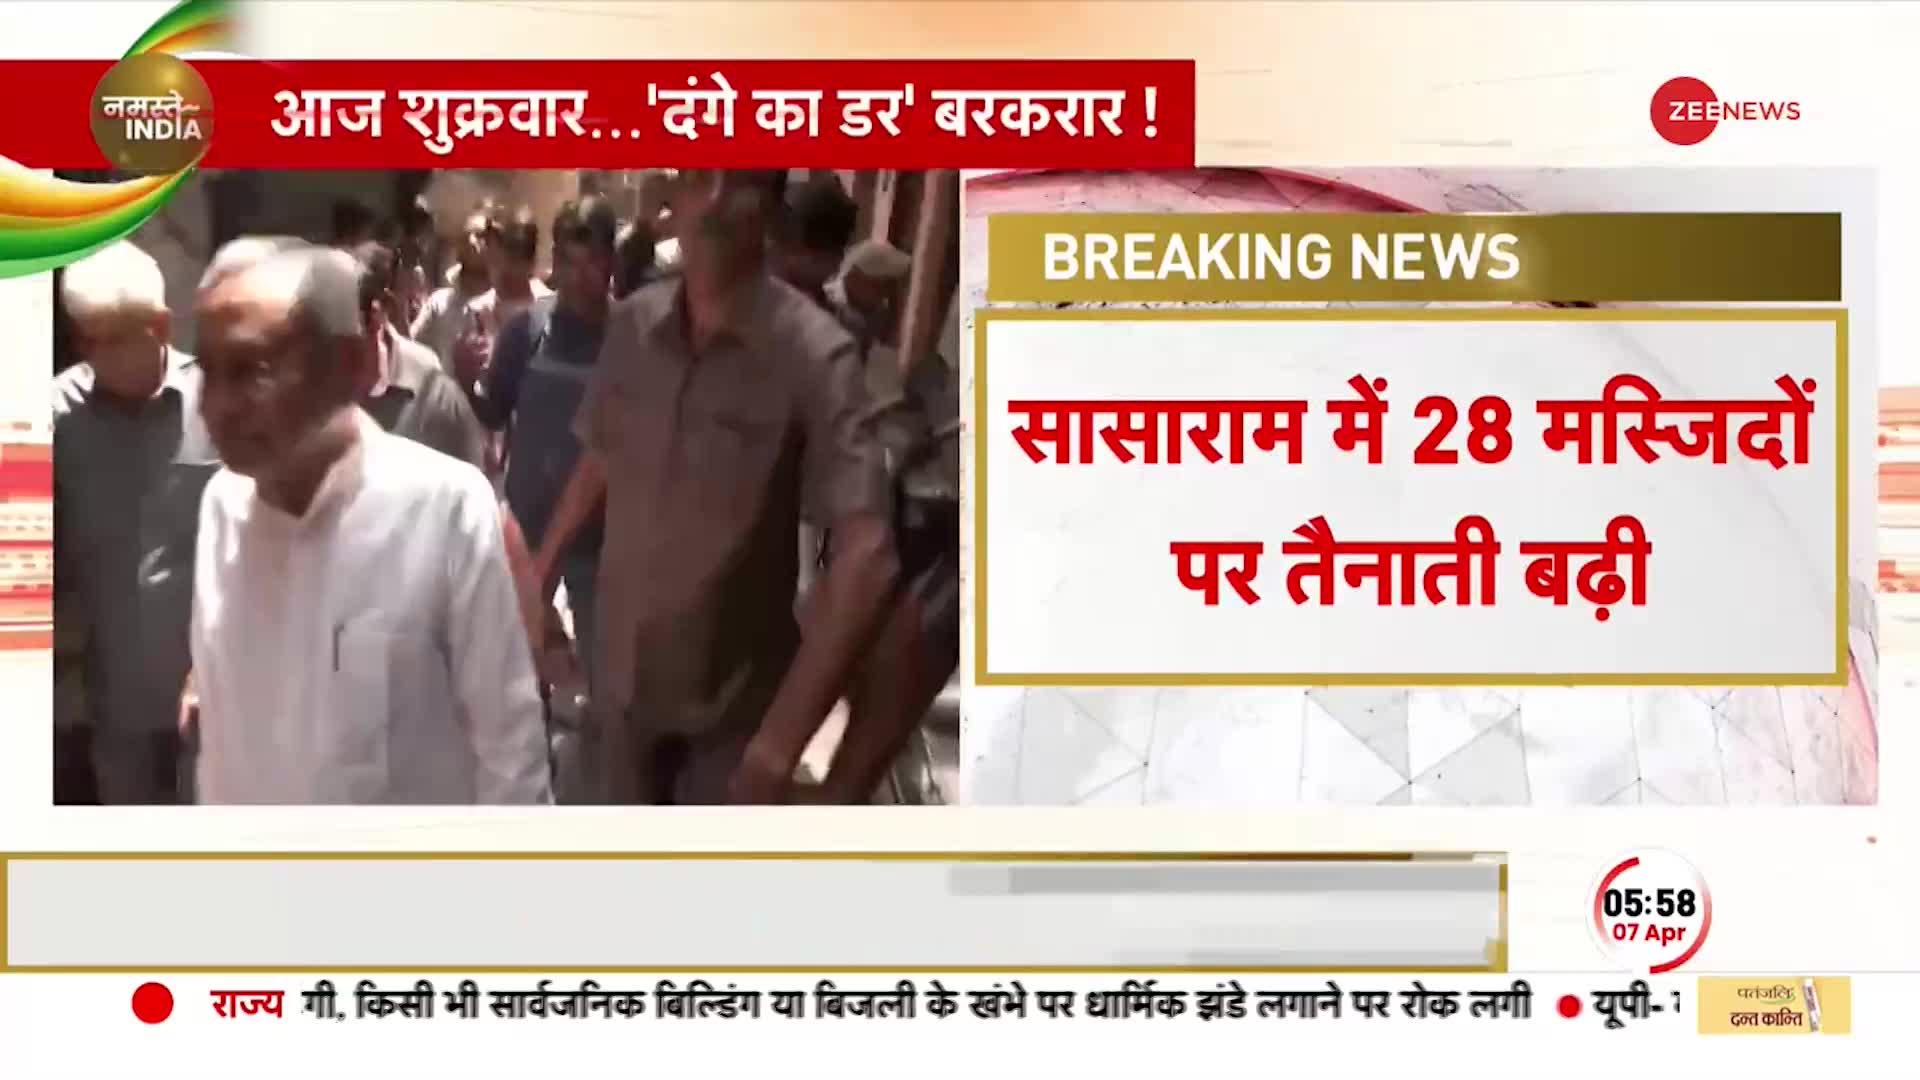 BREAKING NEWS: Bihar में Juma Ki Namaz पर Alert जारी, Sasaram में 28 मस्जिदों पर तैनाती बढ़ी